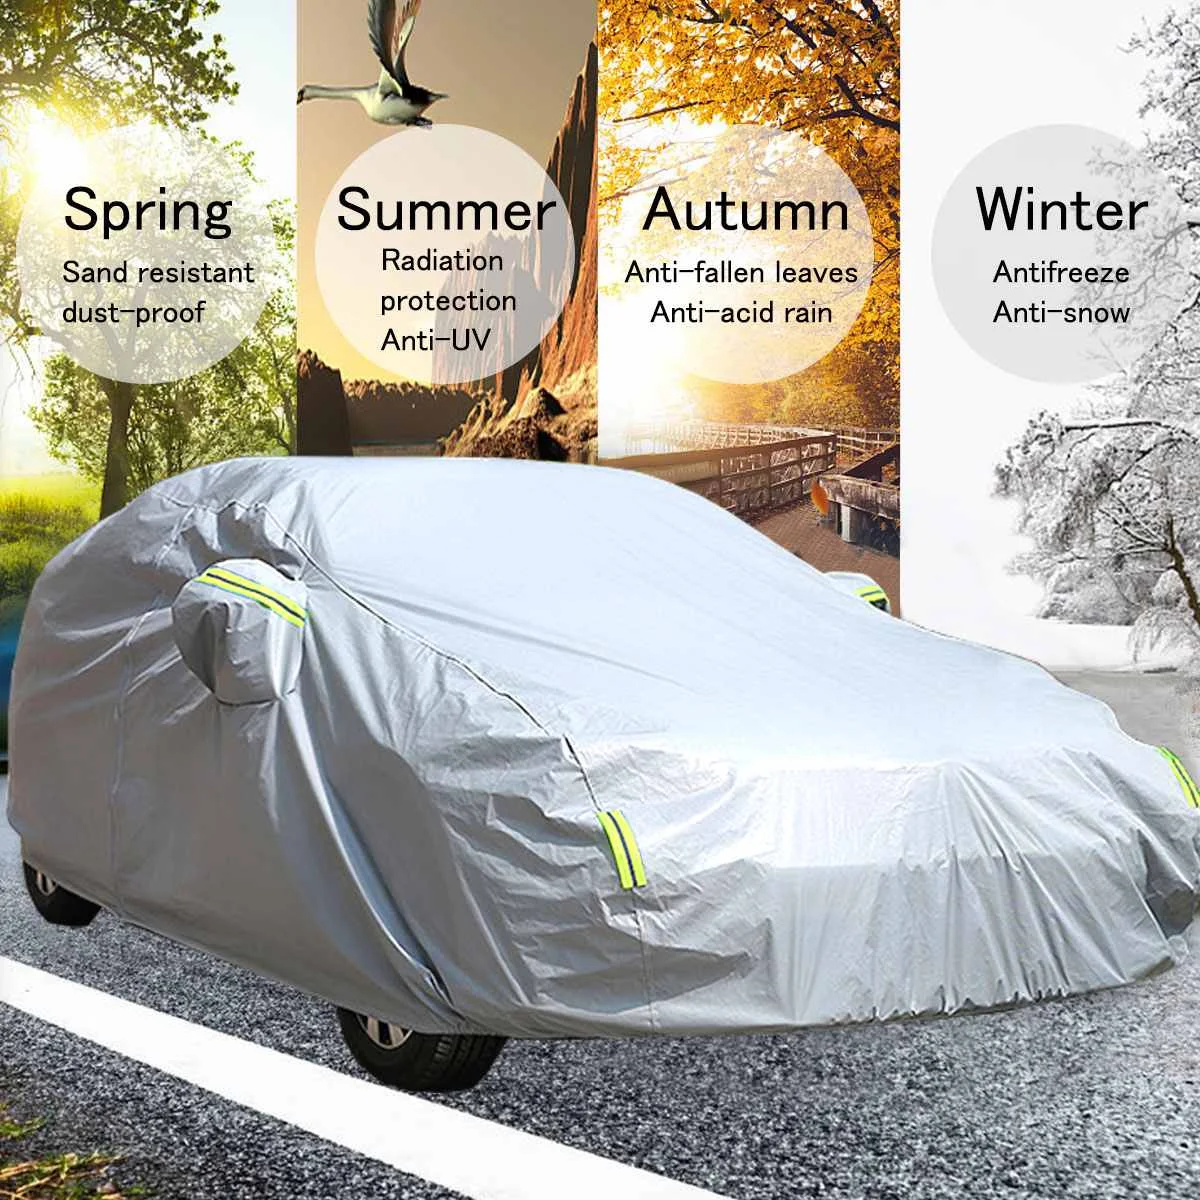 210T impermeável do carro cobre de sol ao ar livre capa de protecção para o carro refletor de poeira, chuva, neve de proteção suv sedan hatch completo